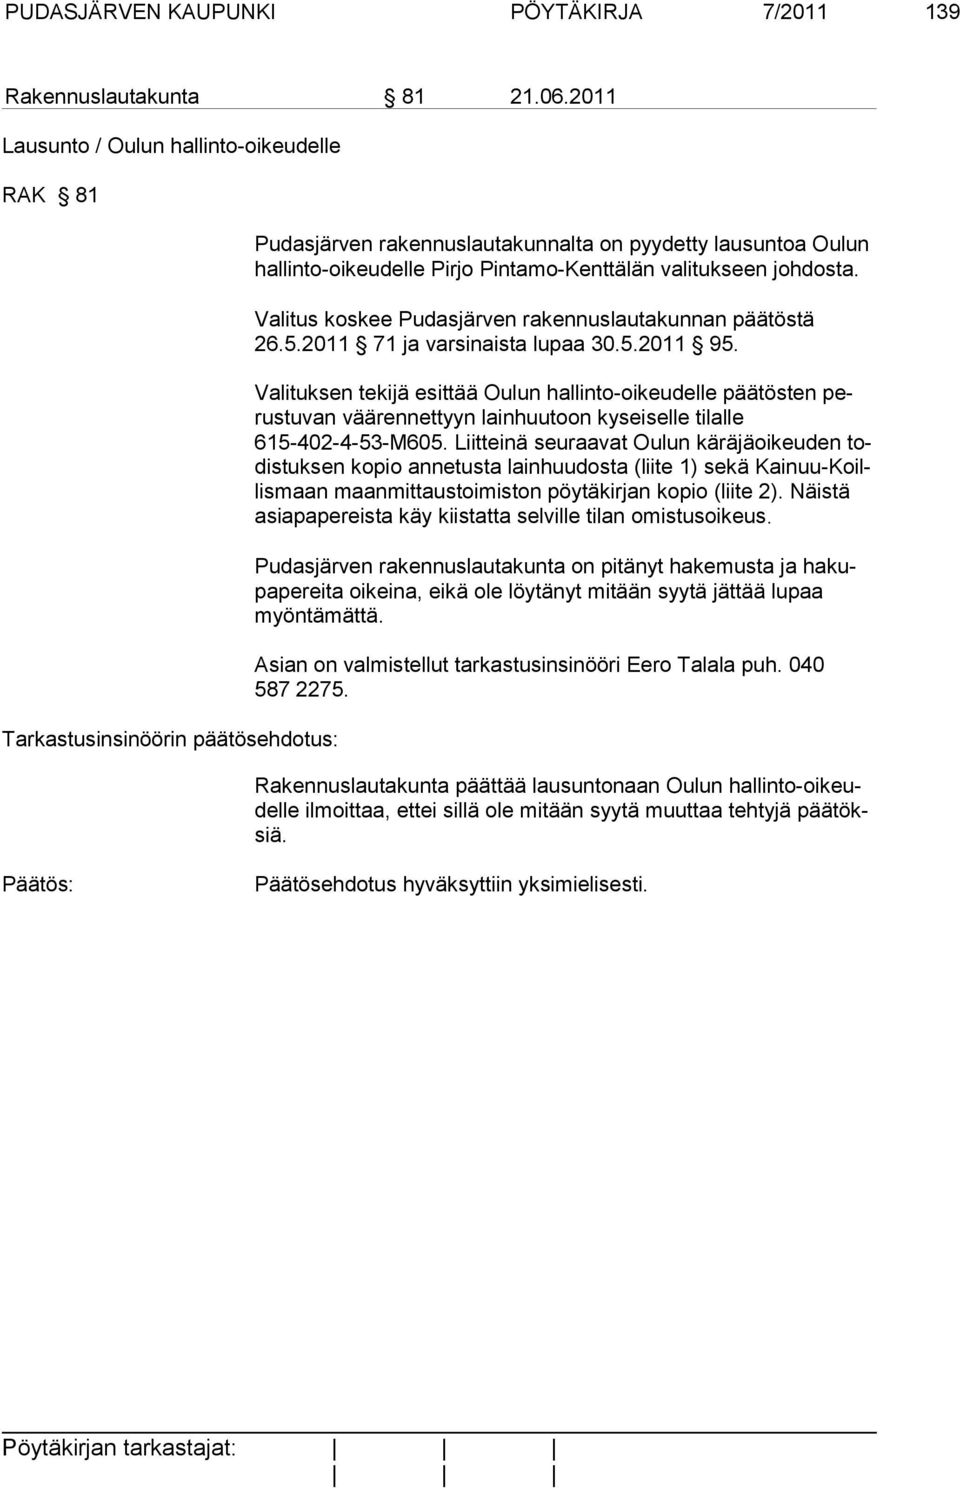 tukseen johdosta. Valitus koskee Pudasjärven rakennuslautakunnan päätöstä 26.5.2011 71 ja varsinaista lupaa 30.5.2011 95.